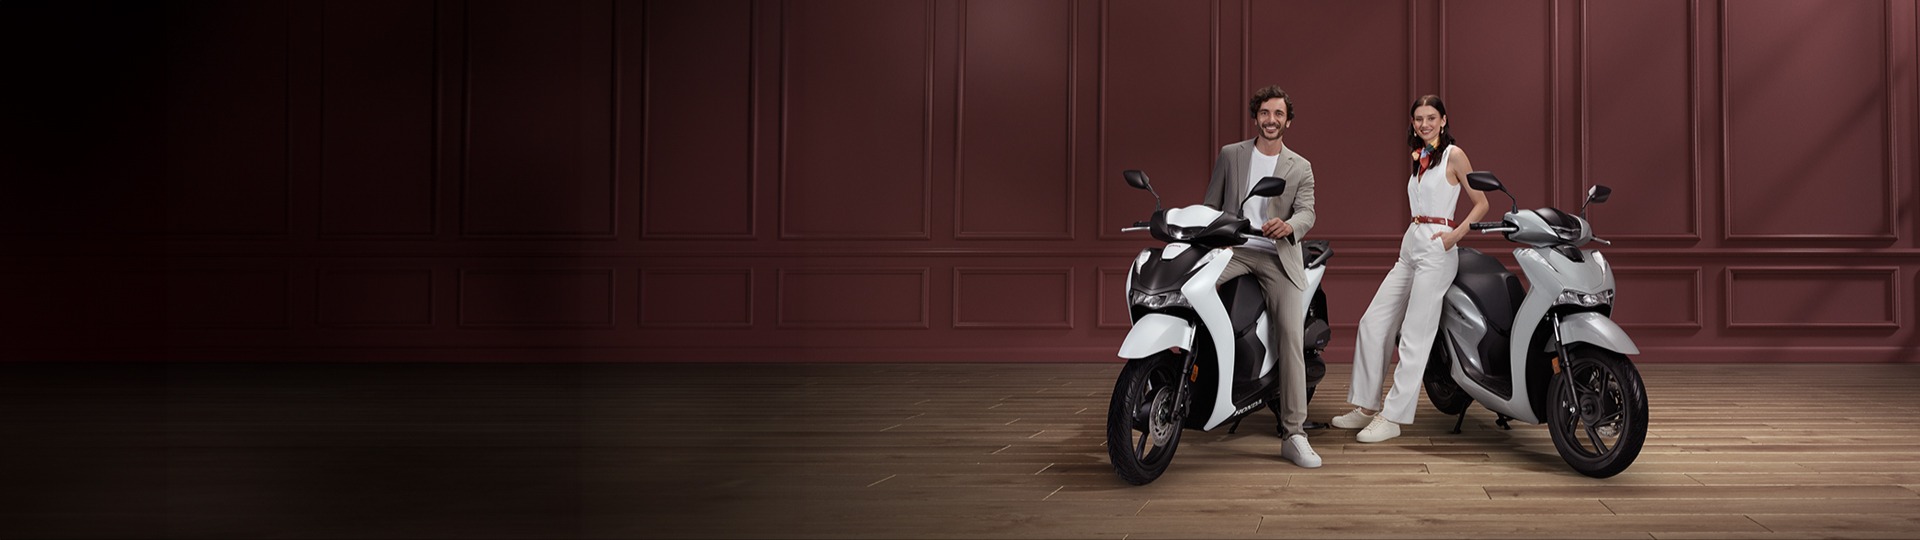 Dikkat çekici ve şık tasarımıylasana çok yakışacak Honda SH125i,şimdi Türkiye'de.